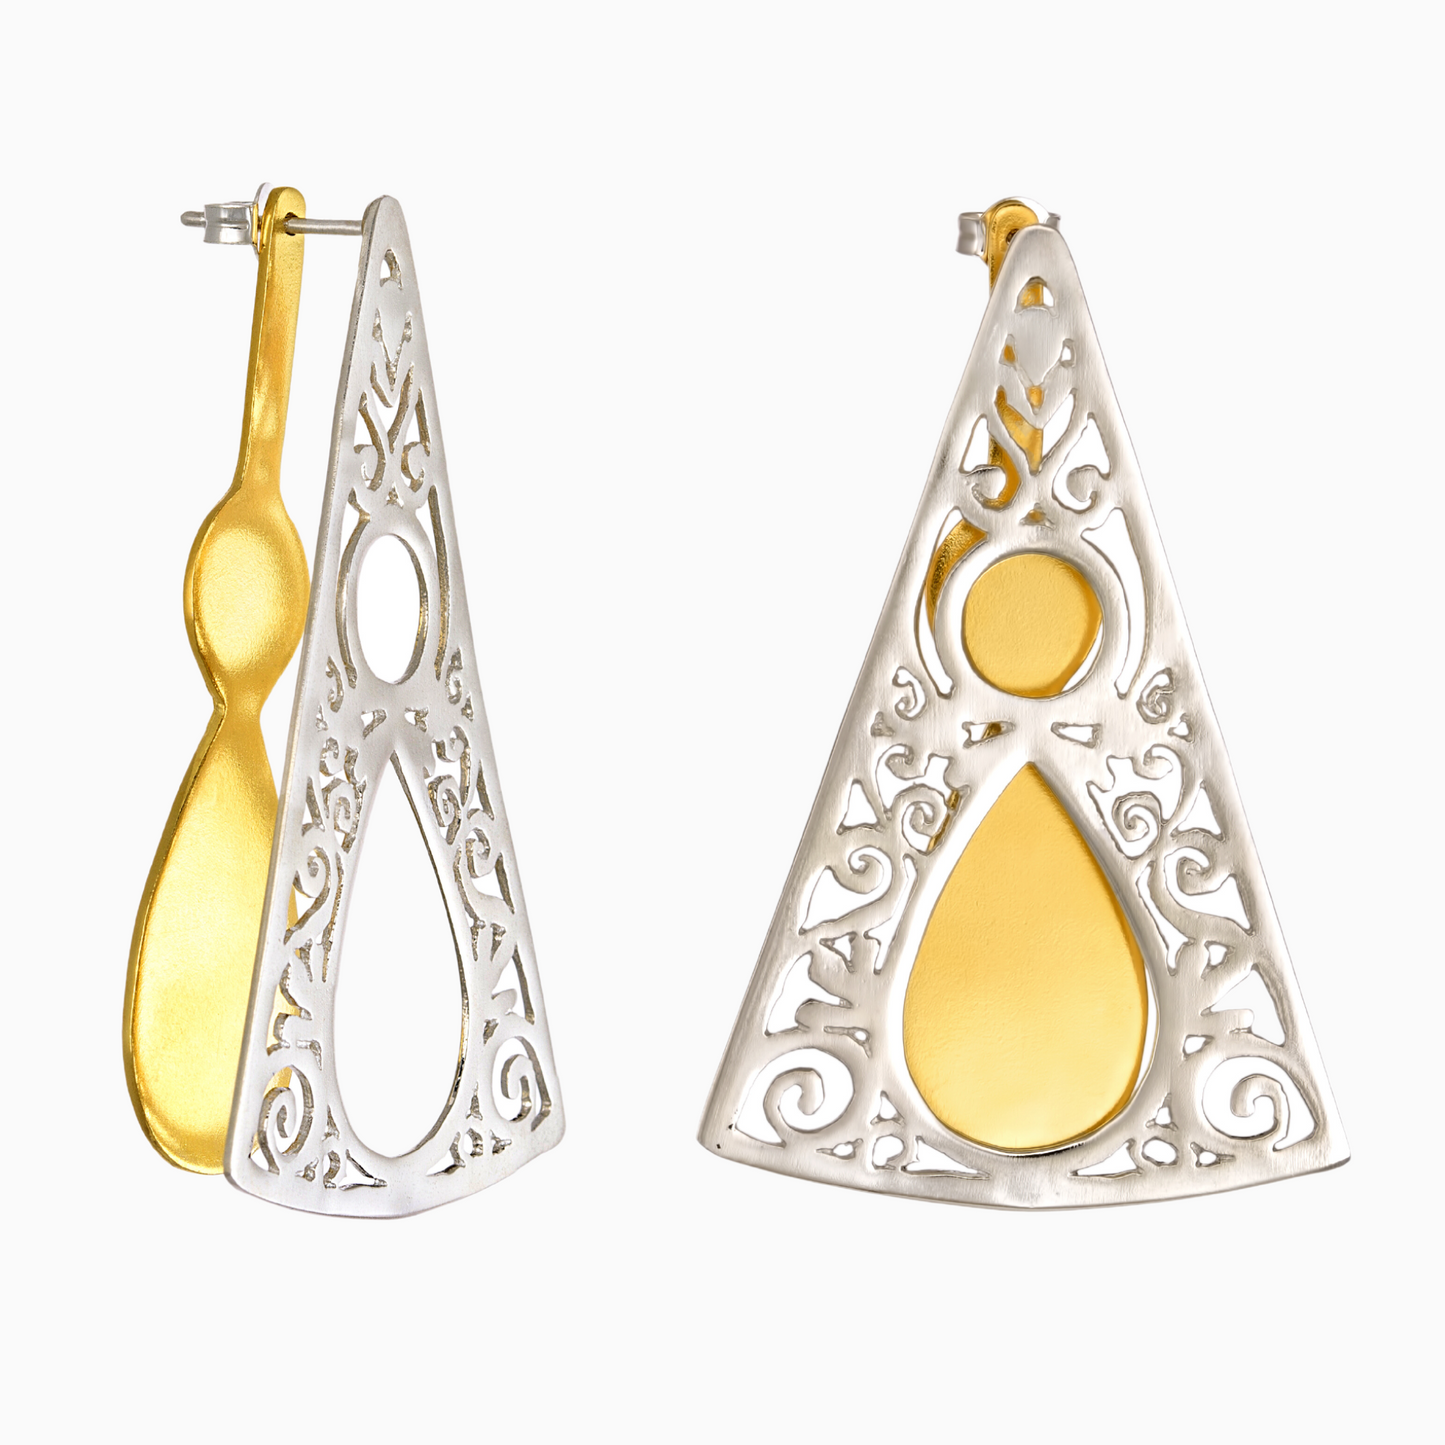 1821 Revolution earrings by NORIDU Jewelry - Greek Jewellery Designer